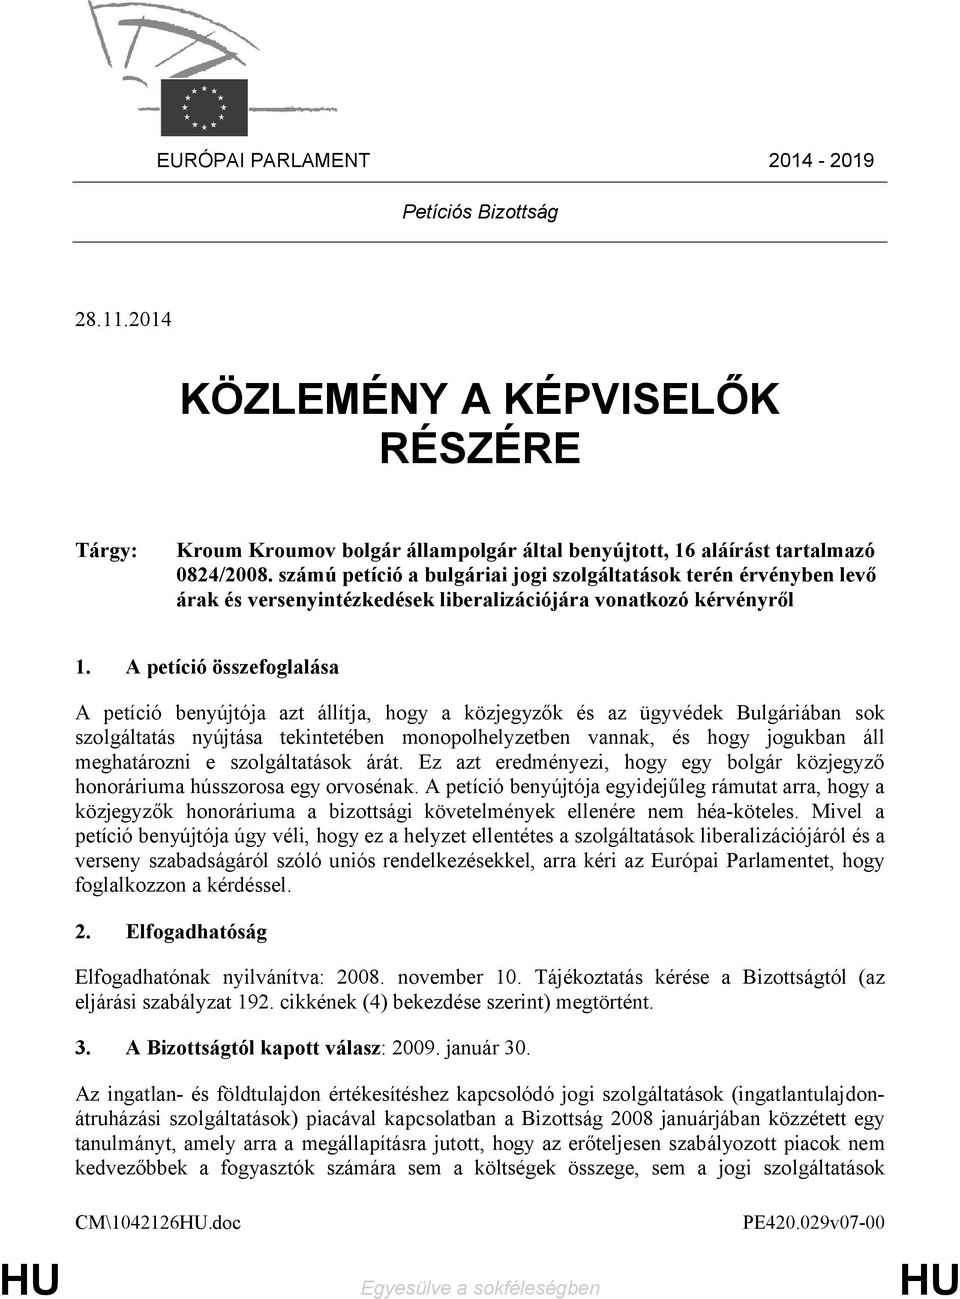 A petíció összefoglalása A petíció benyújtója azt állítja, hogy a közjegyzők és az ügyvédek Bulgáriában sok szolgáltatás nyújtása tekintetében monopolhelyzetben vannak, és hogy jogukban áll